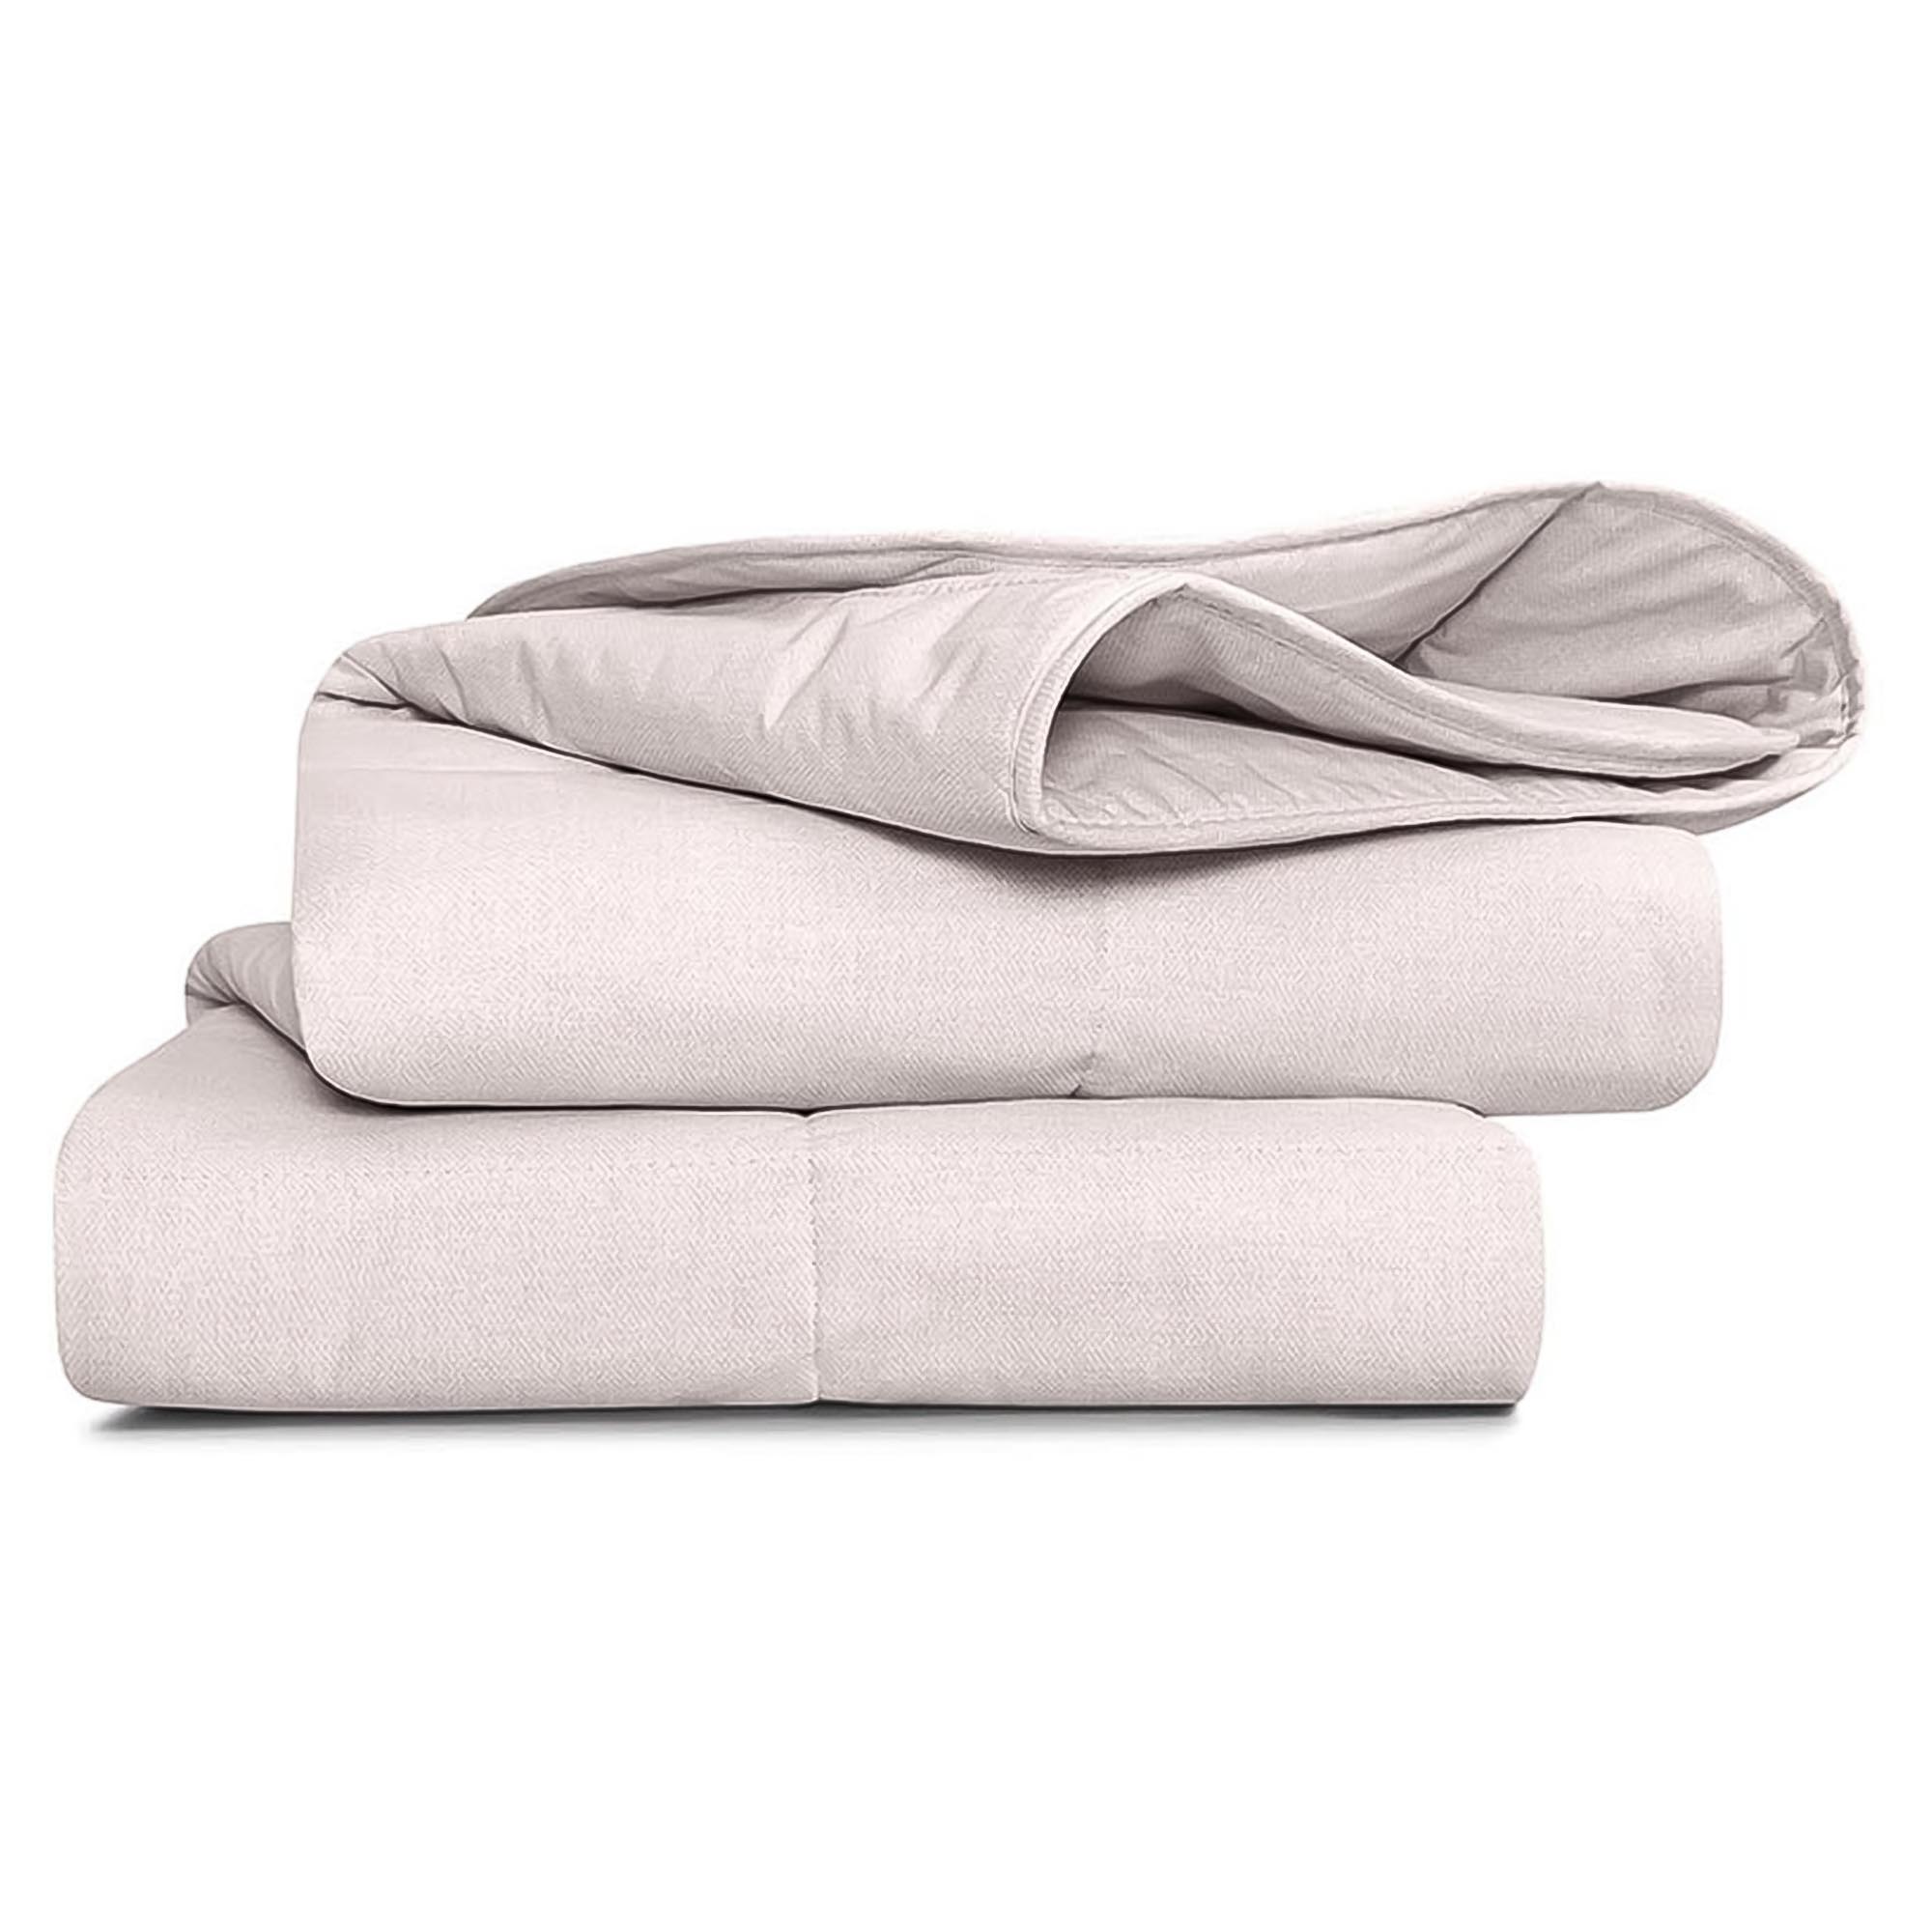 Одеяло Medsleep Sonora белое 200х210 см одеяло зимнее medsleep sonora экрю 175х200 см